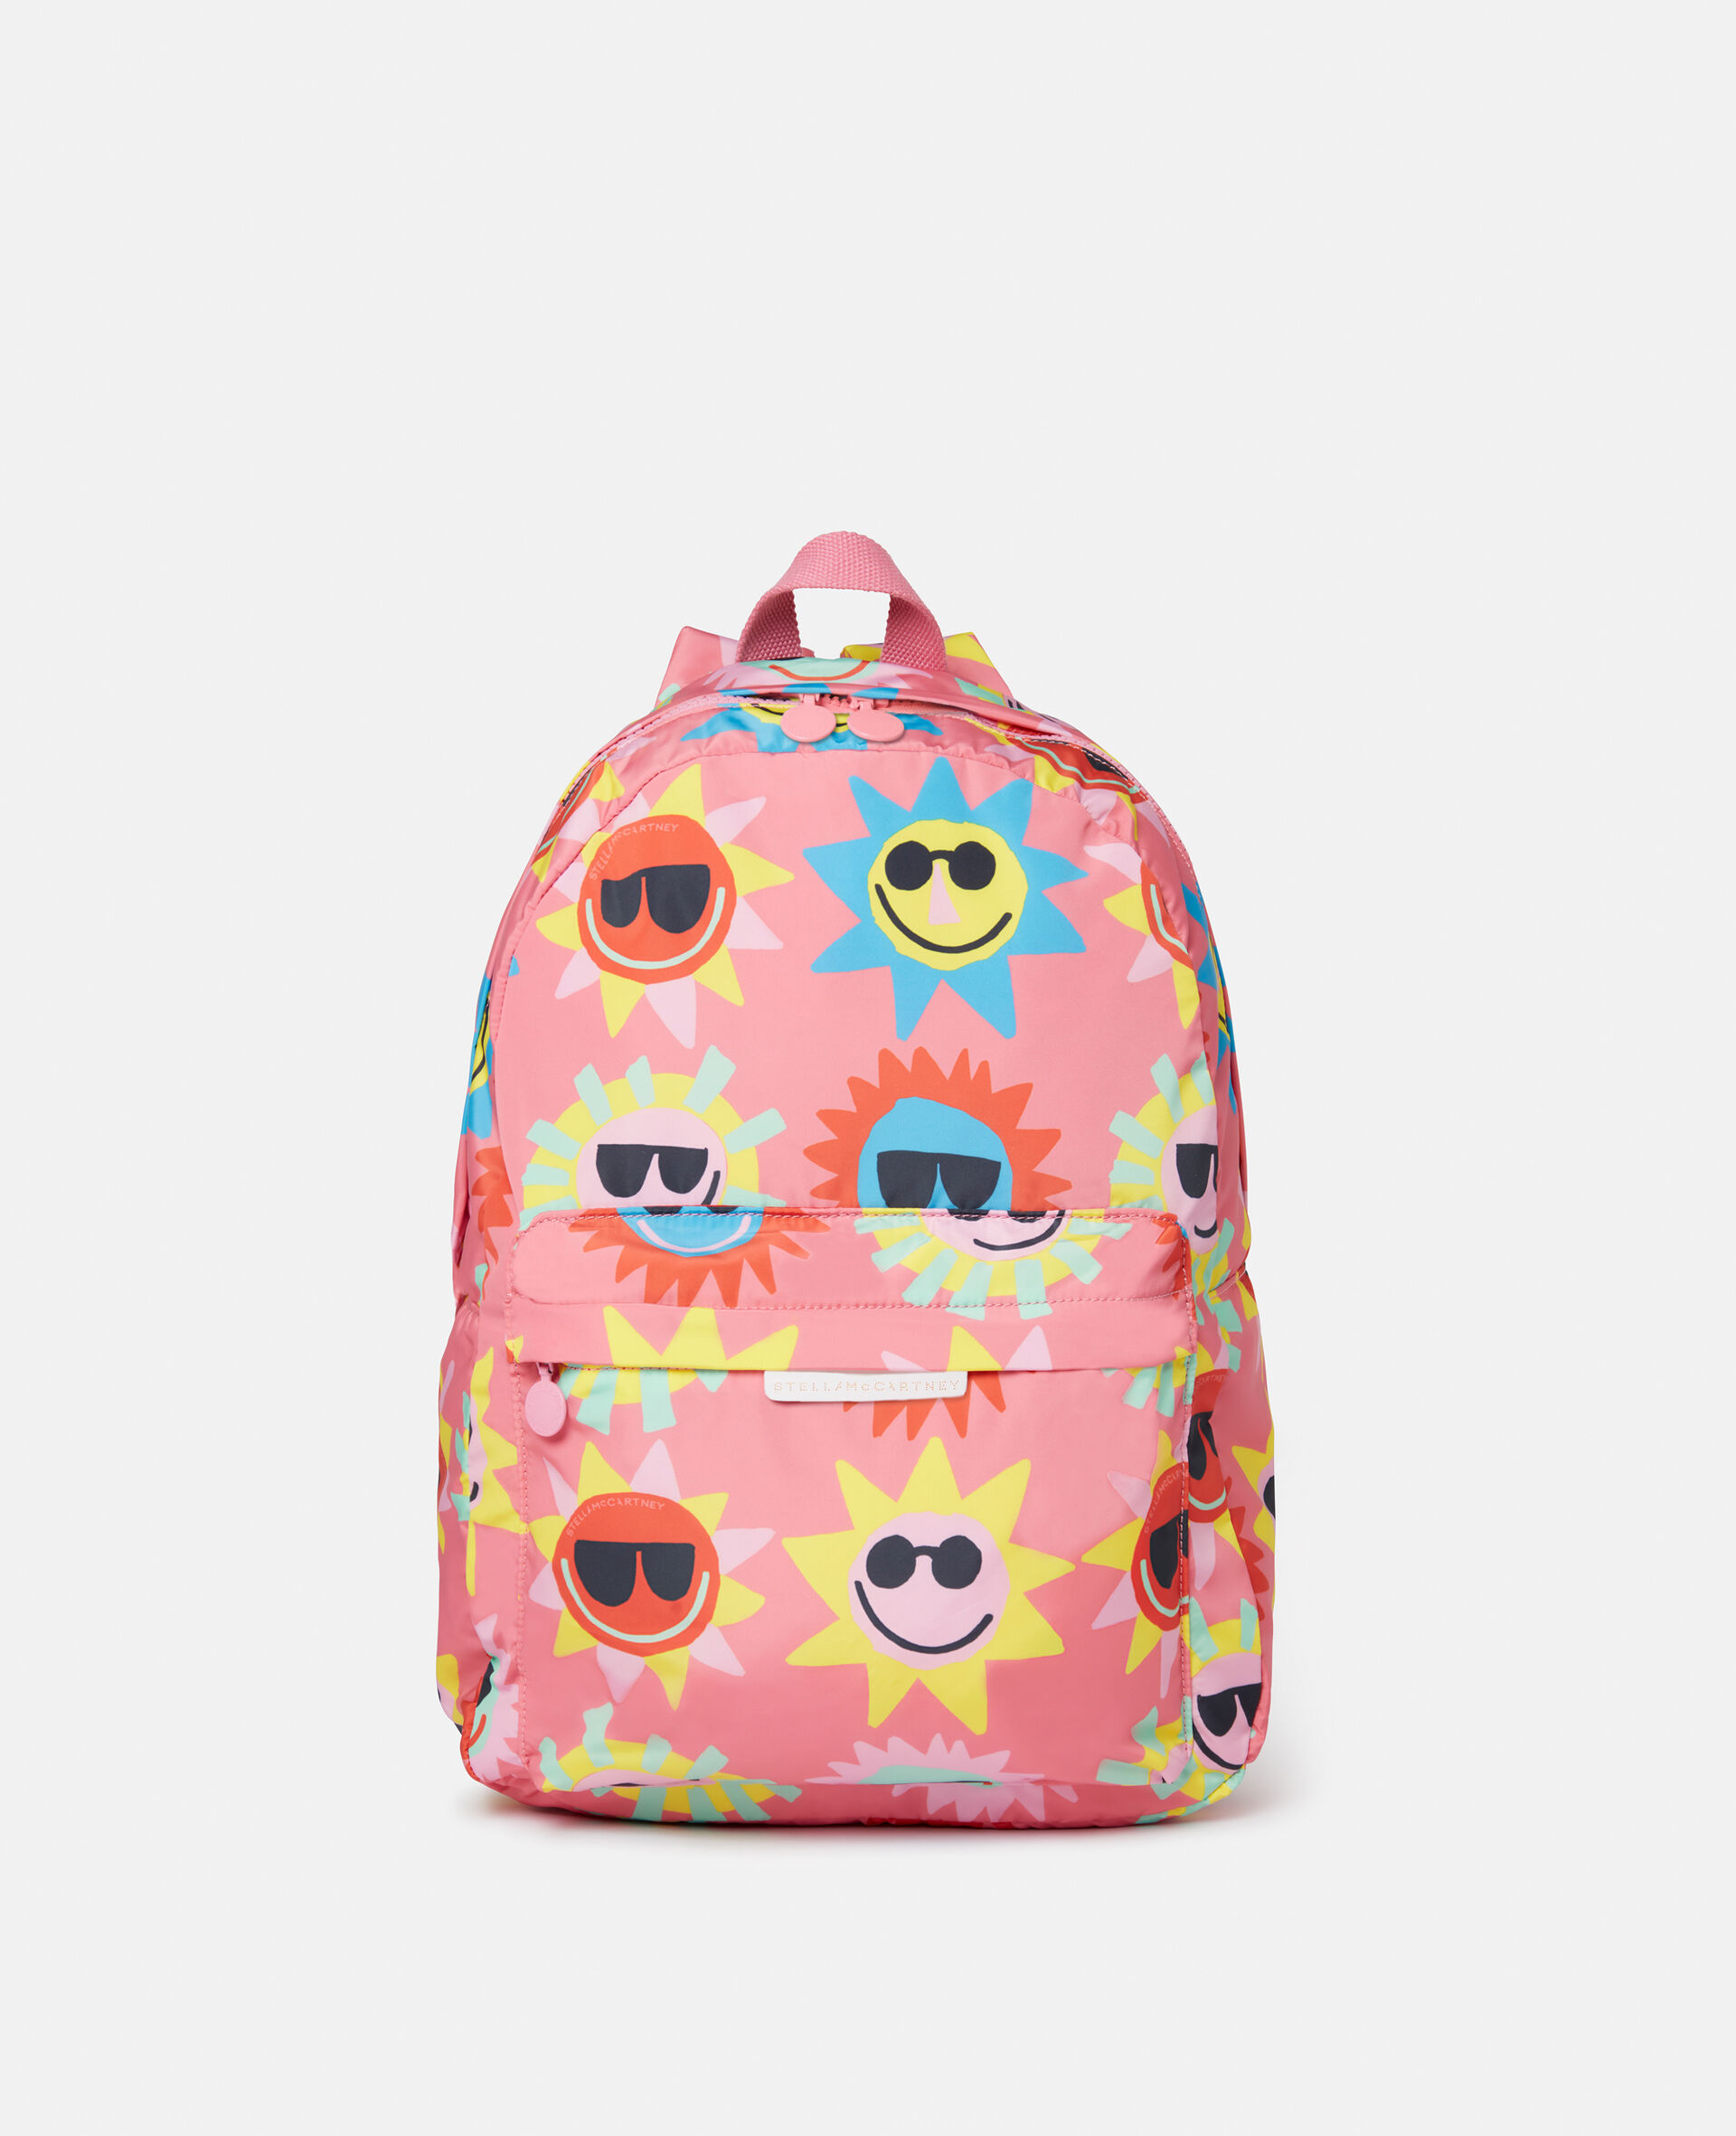 Sunshine Sunglasses Print Backpack-Pink-large image number 0